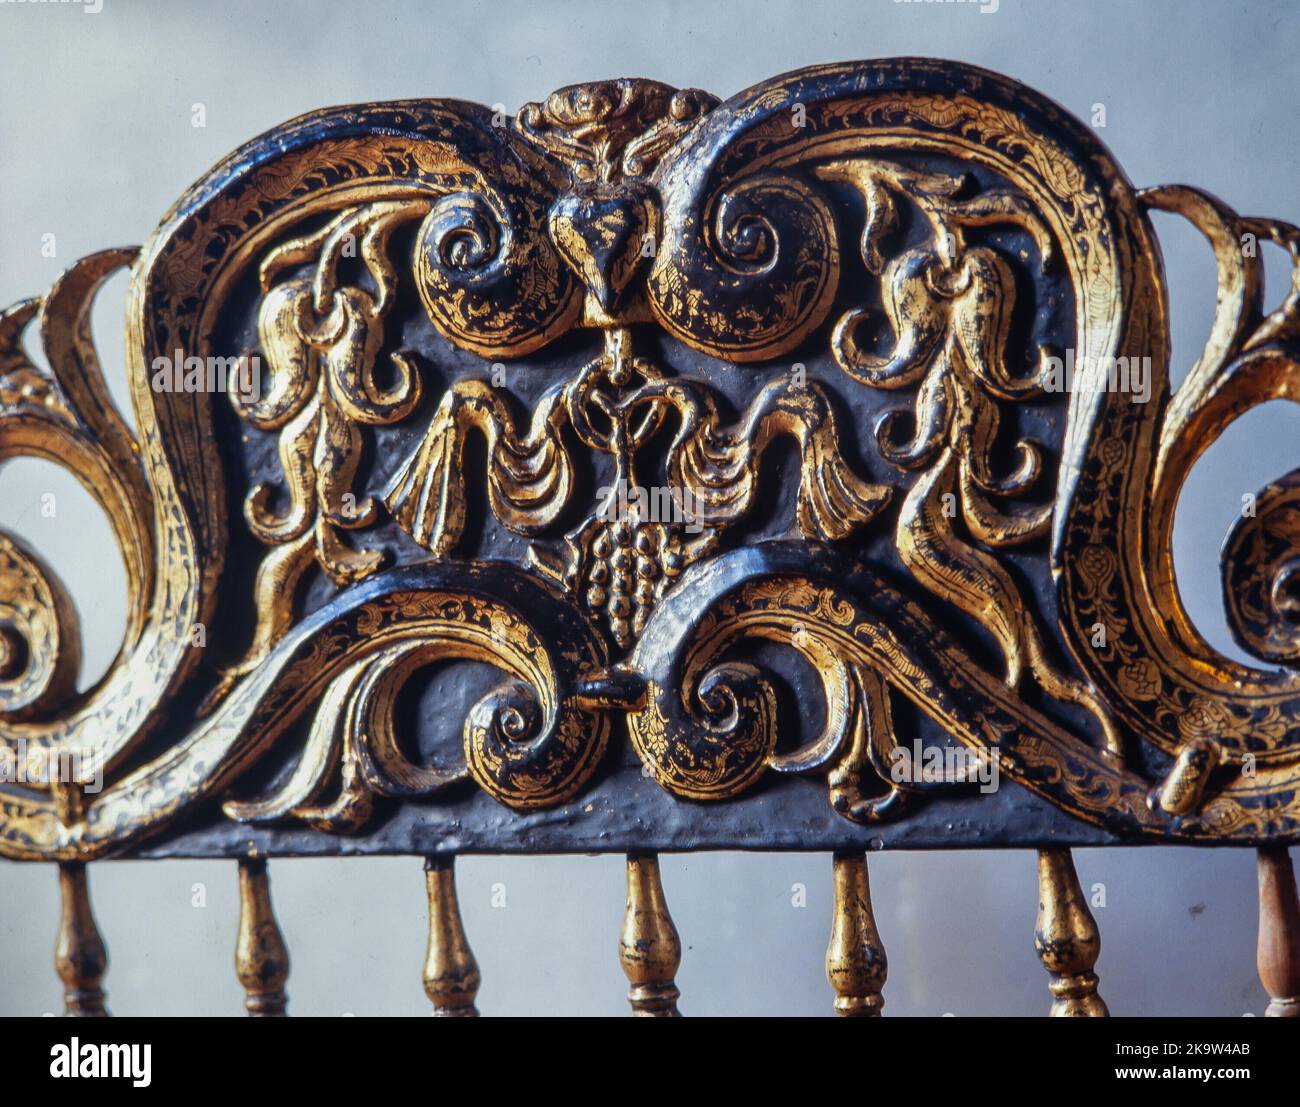 Silla de la reina, detalle. Monasterio de Pedralbes, Barcelona. Siglo XVI. Stock Photo